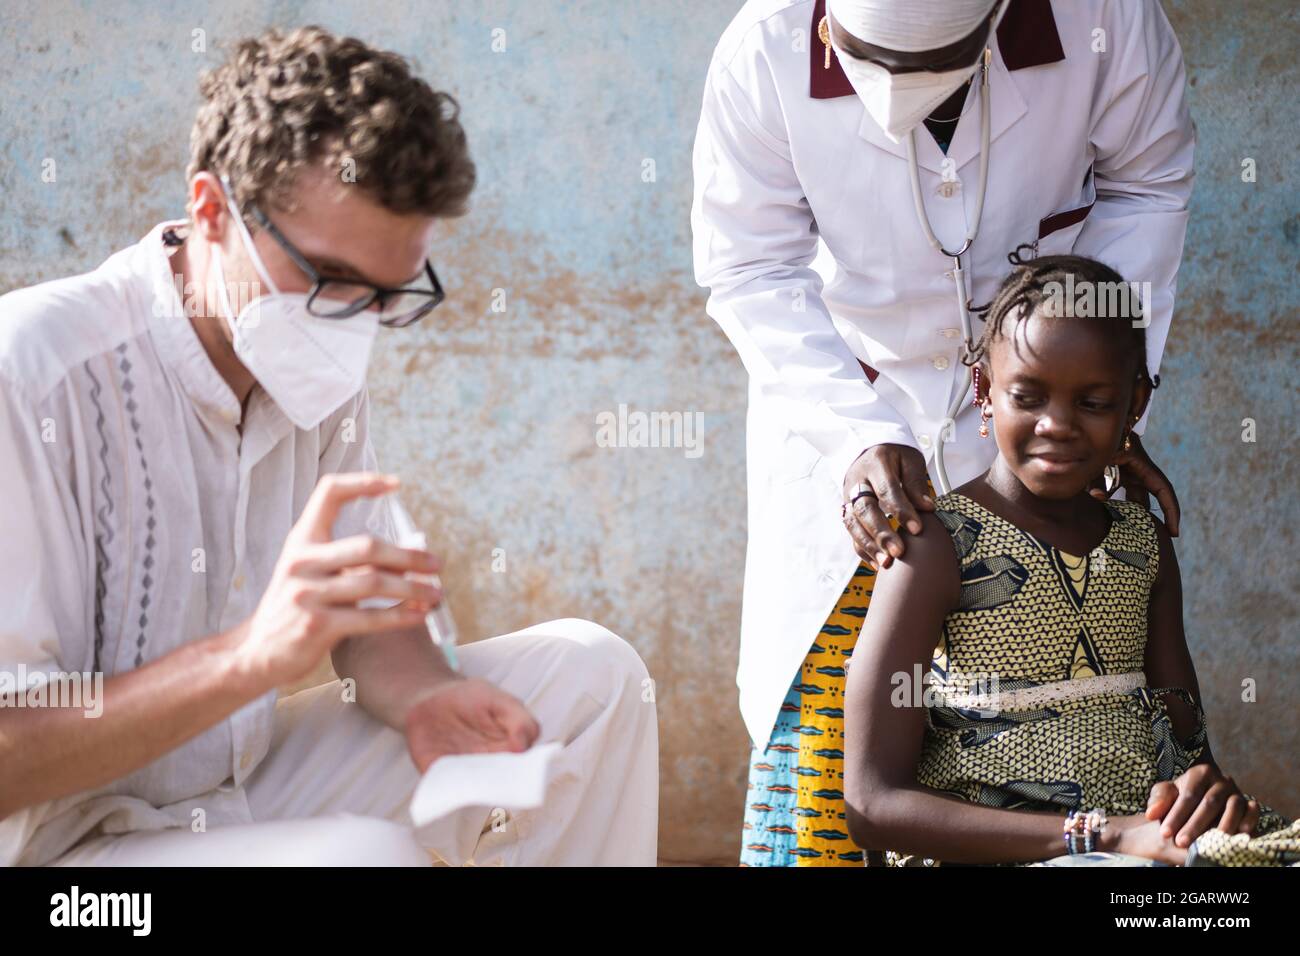 In diesem Bild bereitet ein kaukasischer Arzt eine Spritze vor, während ein selbstbewusstes kleines afrikanisches Mädchen, das auf ihre Injektion wartet, von einem Sanftmütigen beruhigt wird Stockfoto